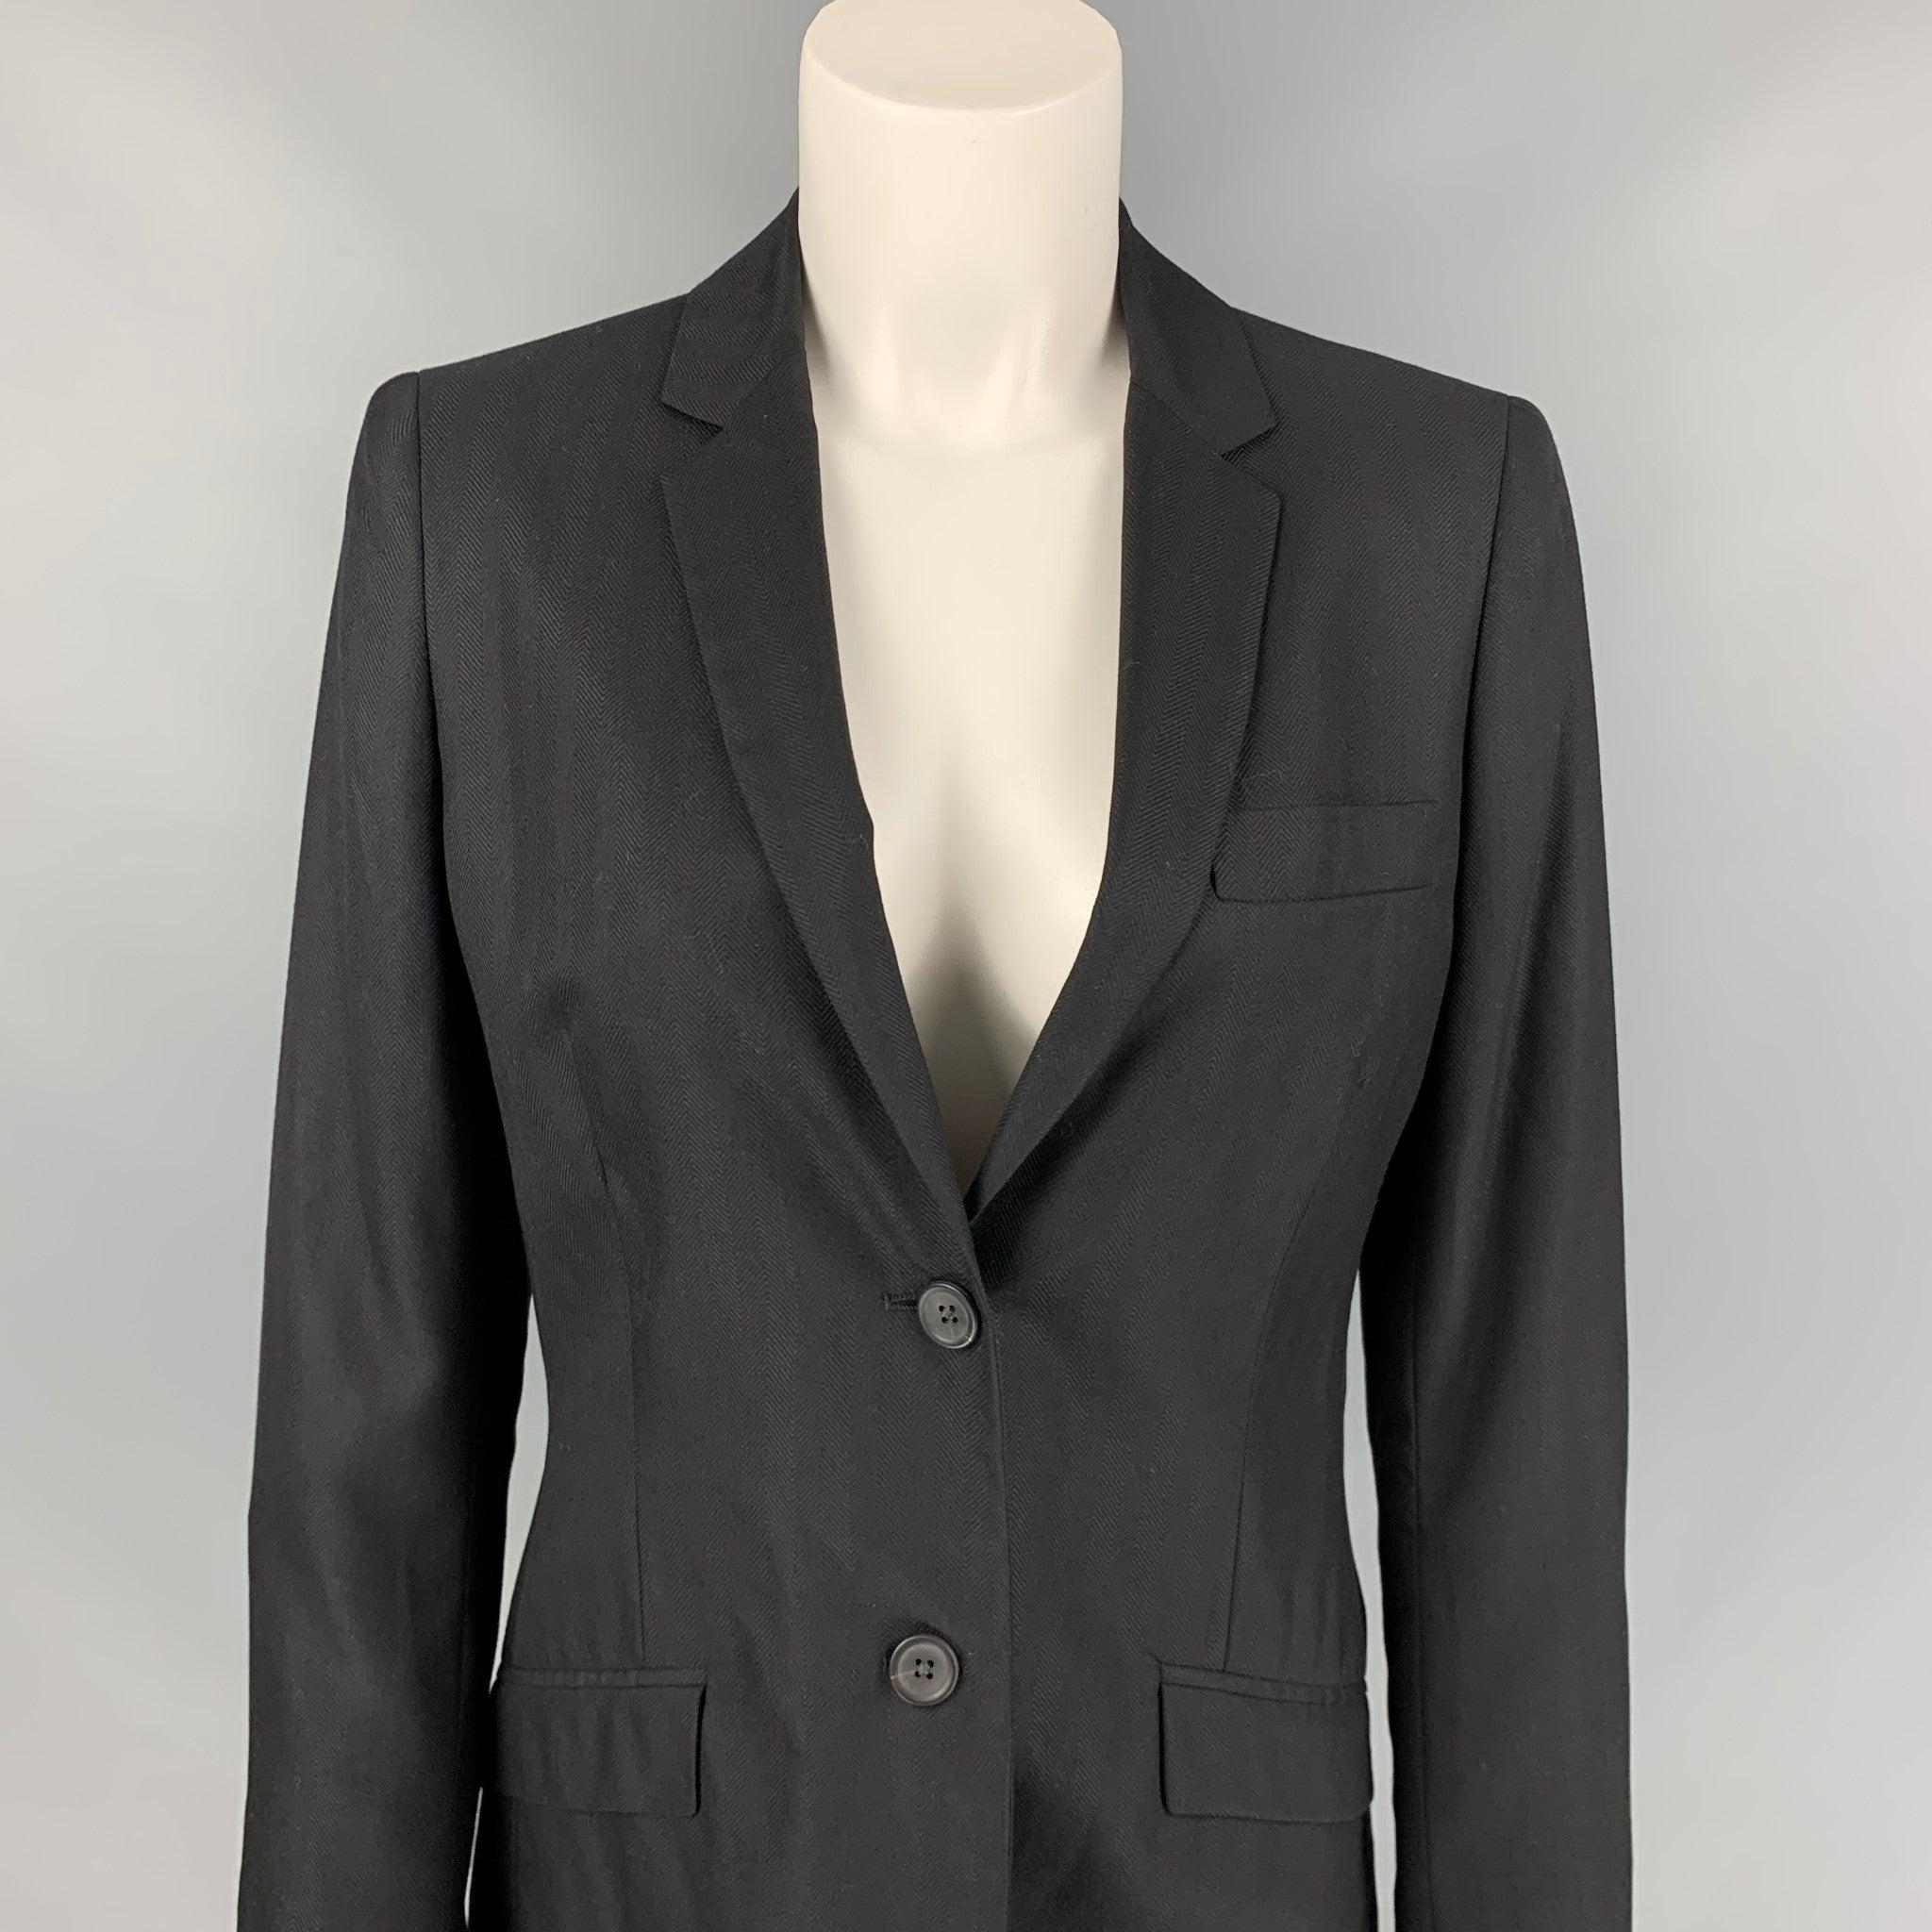 Le blazer de CALVIN KLEIN COLLECTION se compose d'une veste en cachemire/soie noire avec doublure intégrale, d'un revers à cran, de poches à rabat et d'une fermeture à double bouton. Fabriquées en Italie.
Très bien
Etat d'occasion. 

Marqué :   6/42